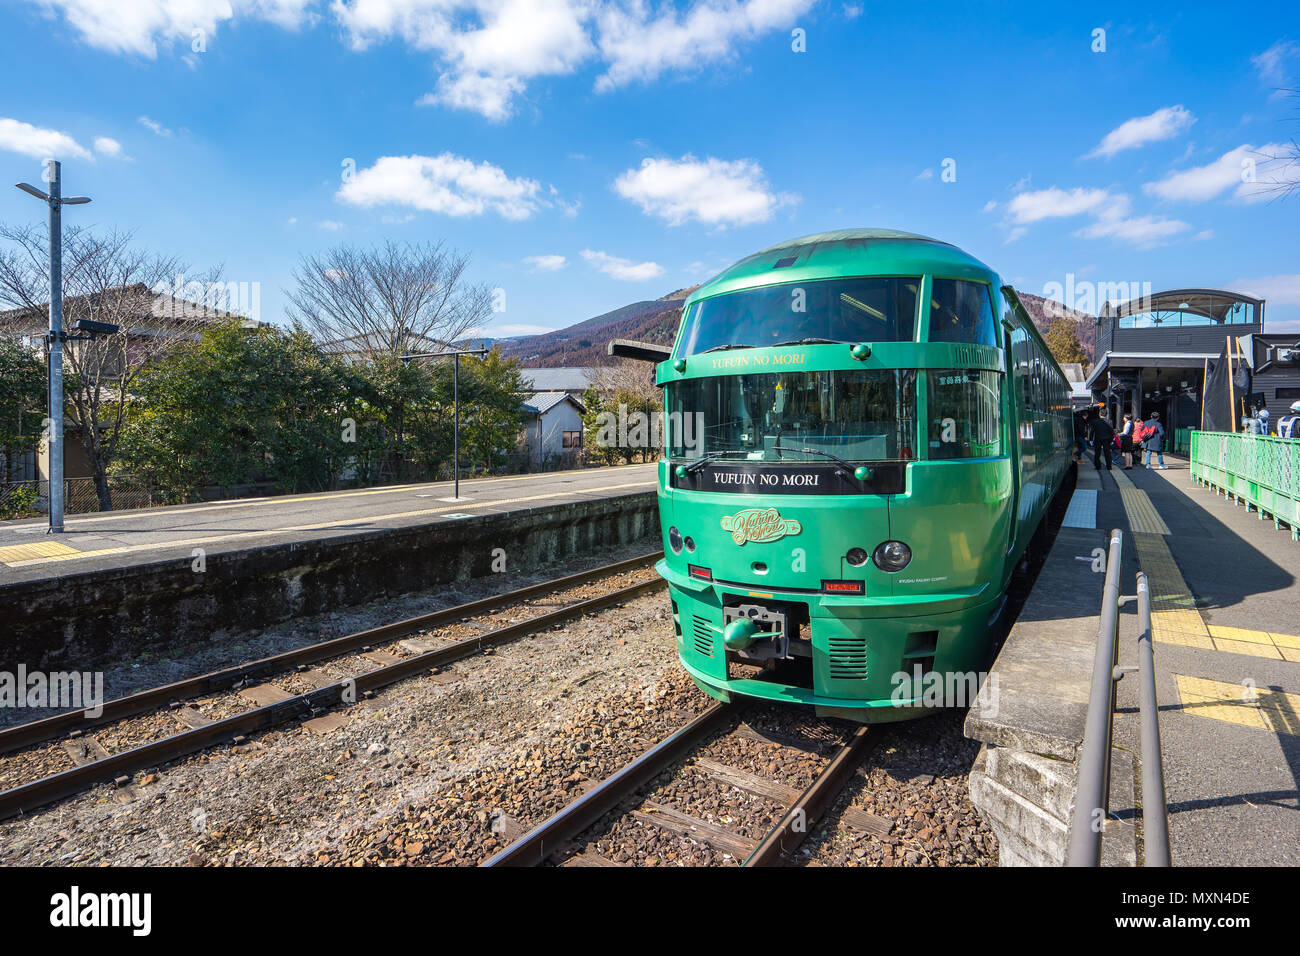 Fukuoka, Giappone - 9 Febbraio 2018: limitata Express Yufuin no Mori treno sono limitate treno express servizi operati dalla Kyushu Azienda ferroviaria (JR Kyus Foto Stock